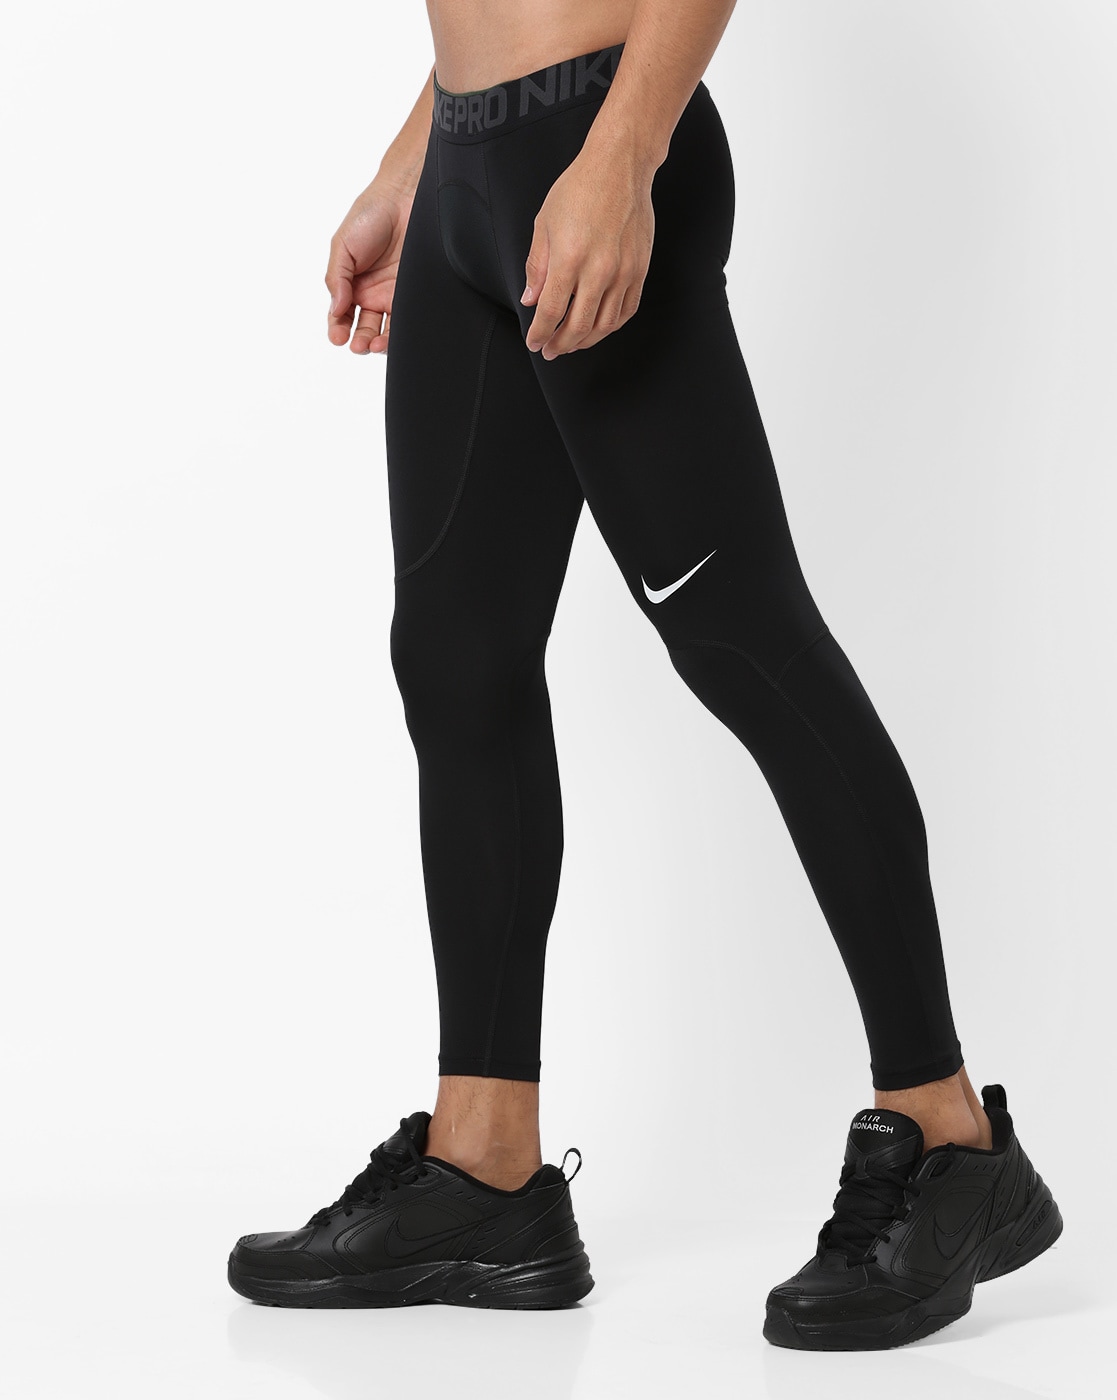 Leggings Nike men Stock Full Length Tight  Top4Runningcom